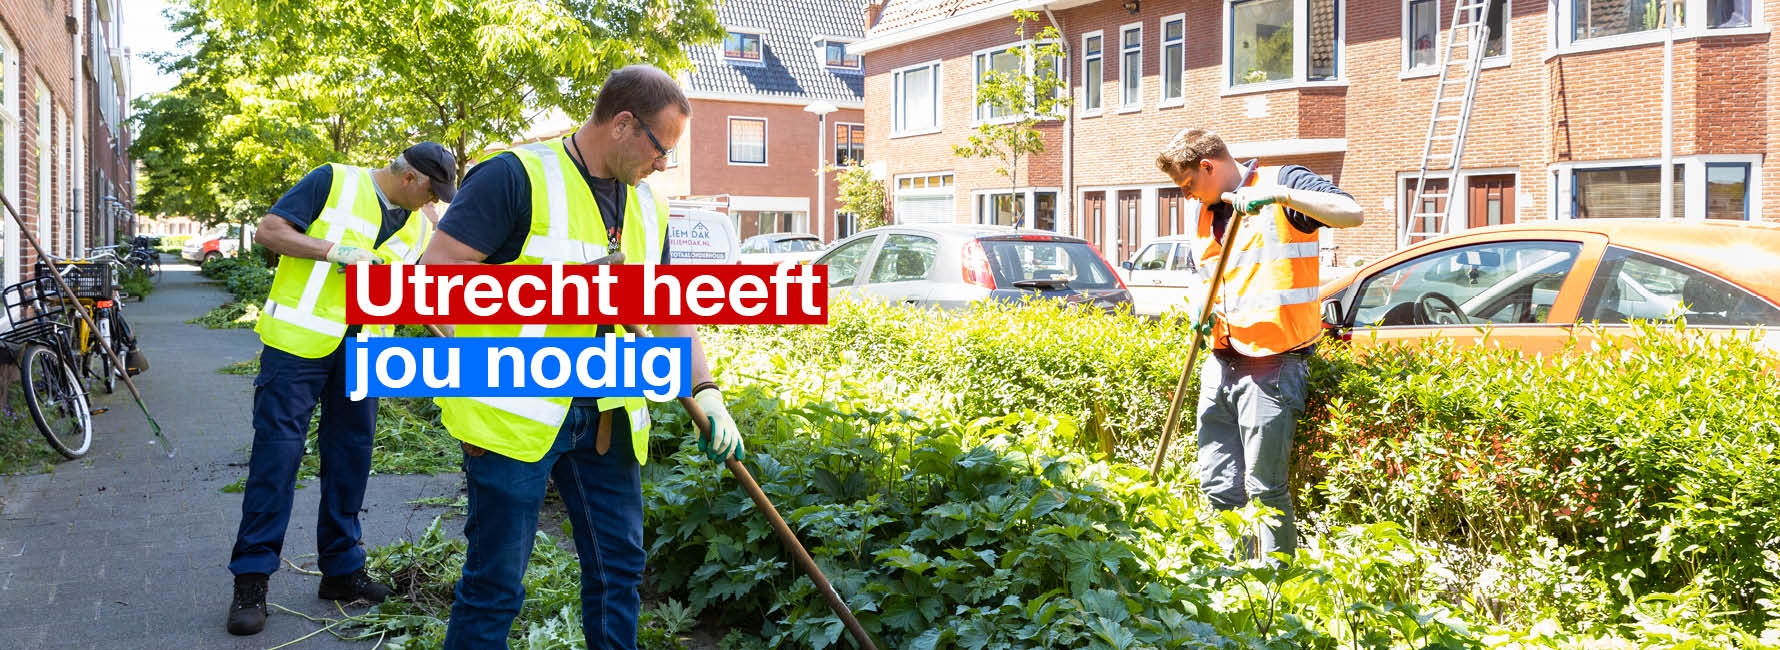 Mensen aan het werk bij de groenvoorziening in een woonwijk. In beeld staat de tekst Utrecht heeft jou nodig.